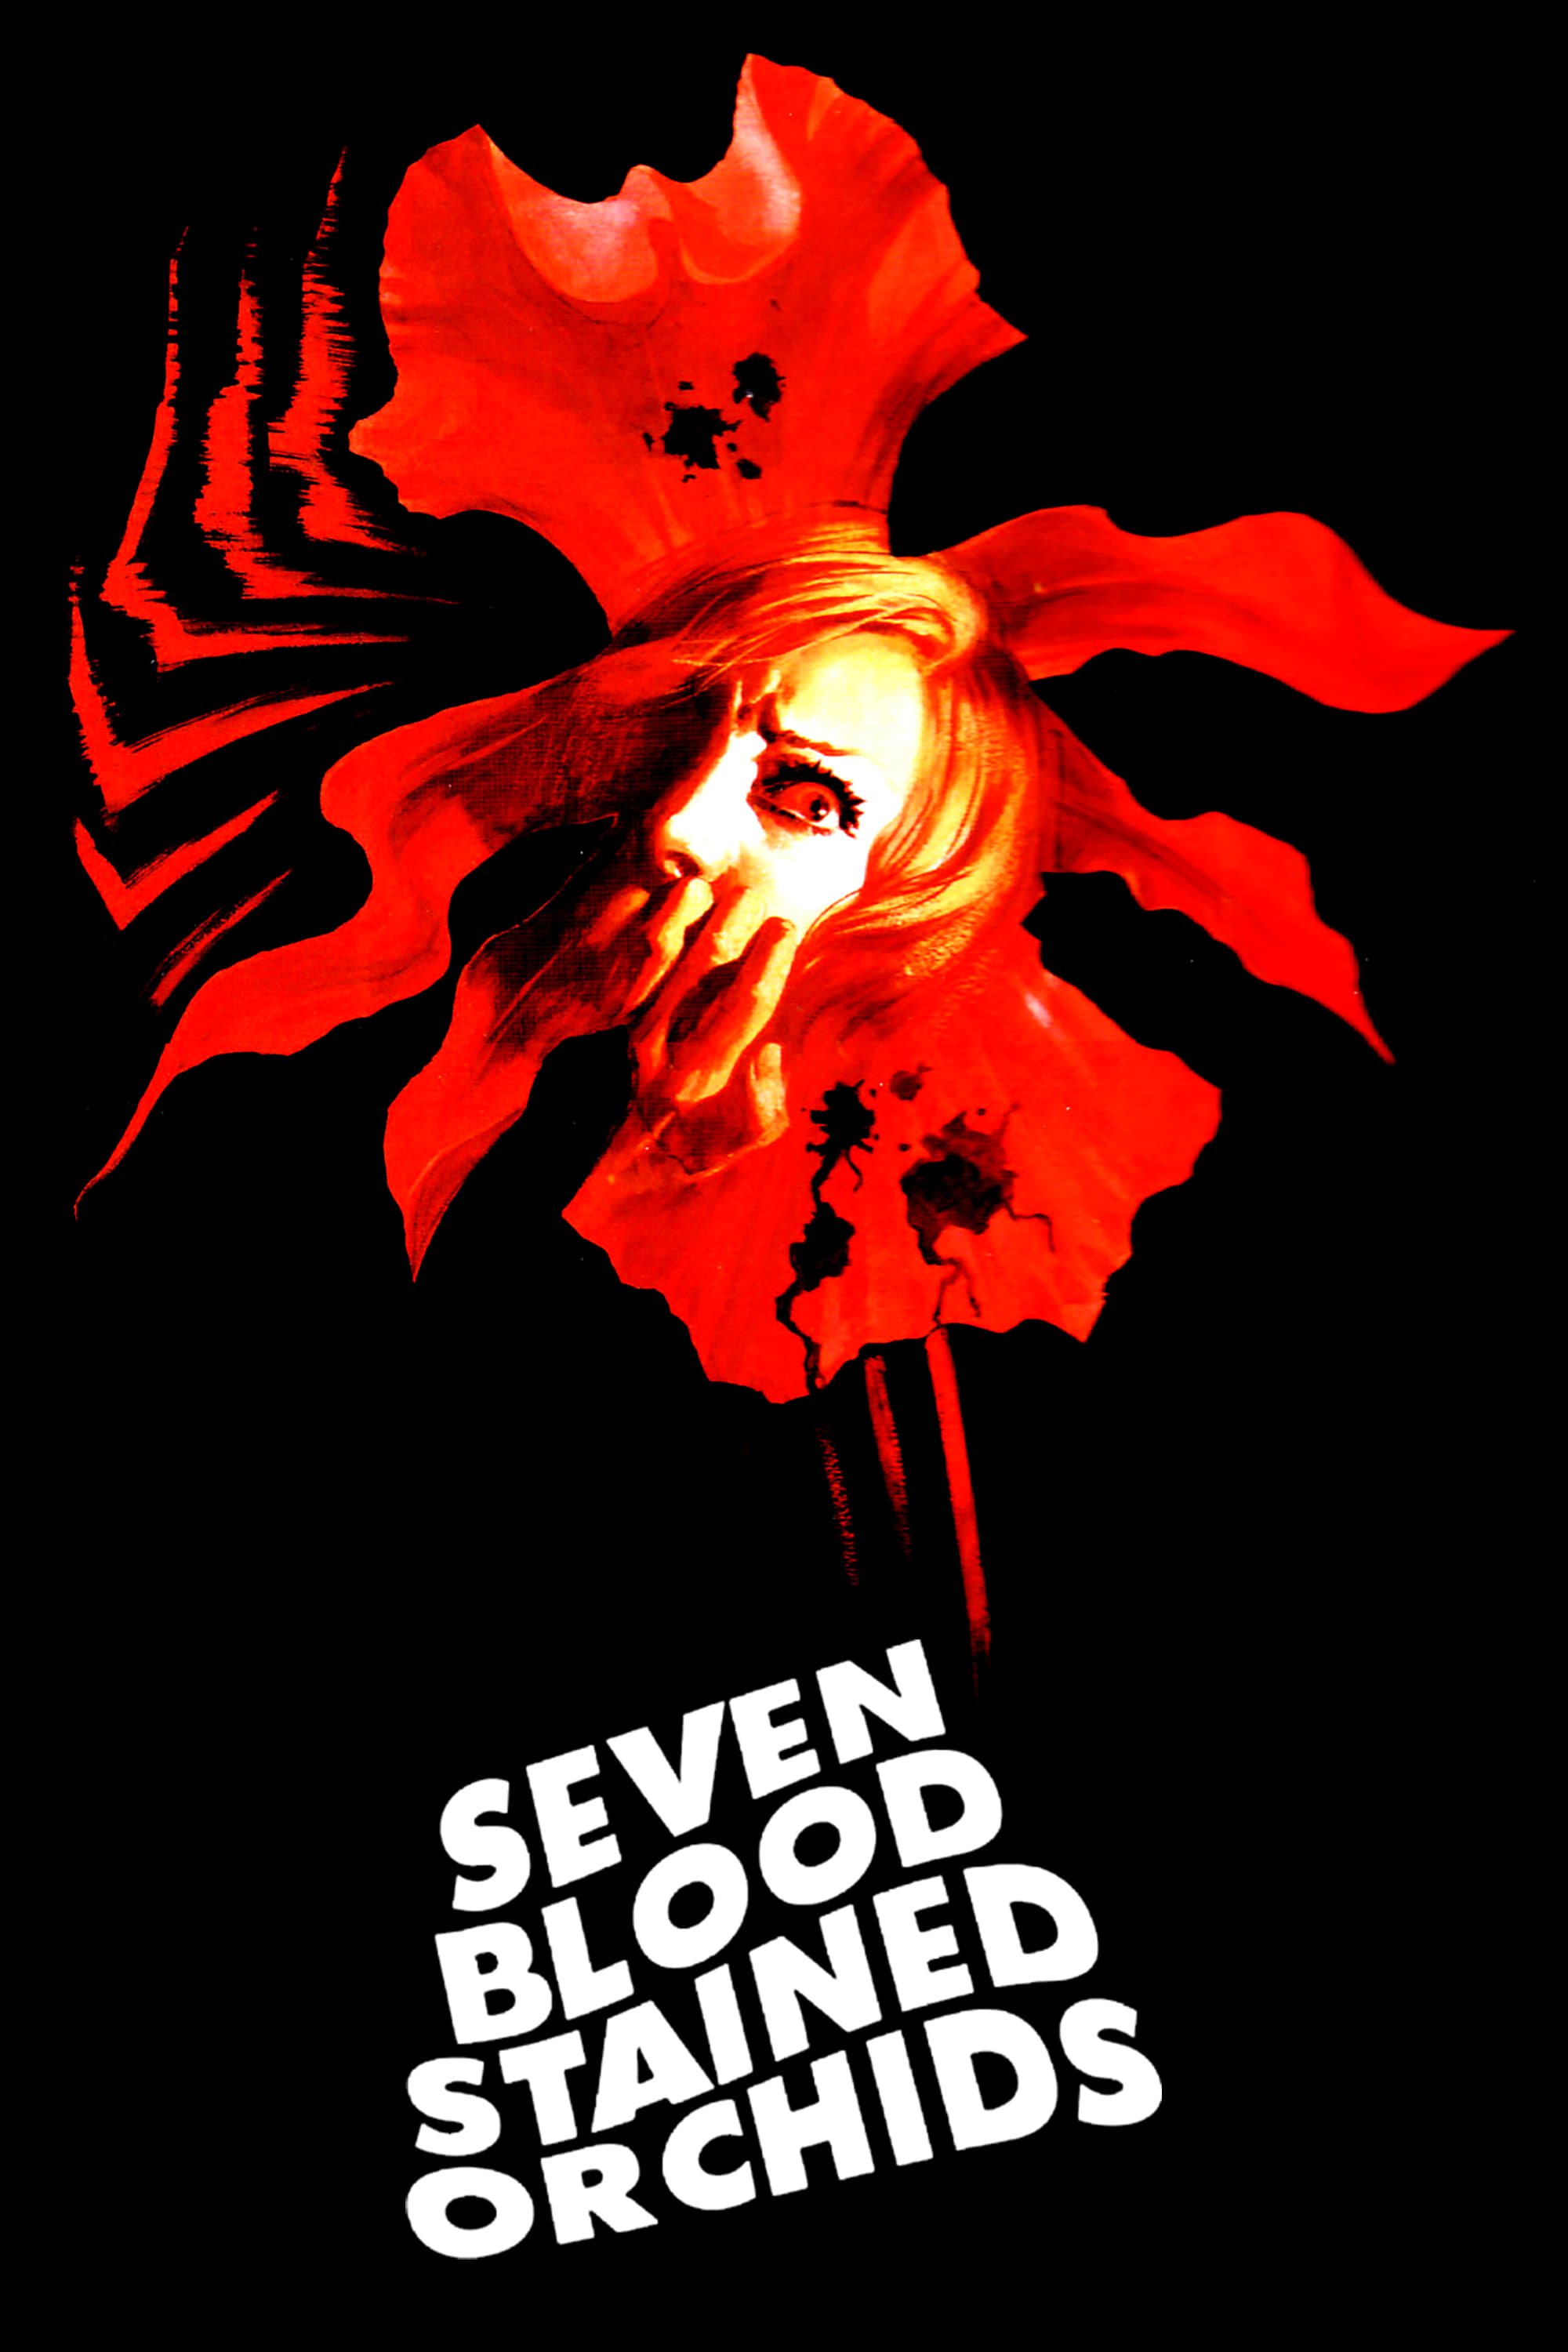 Siete orquídeas manchadas de rojo (1972)